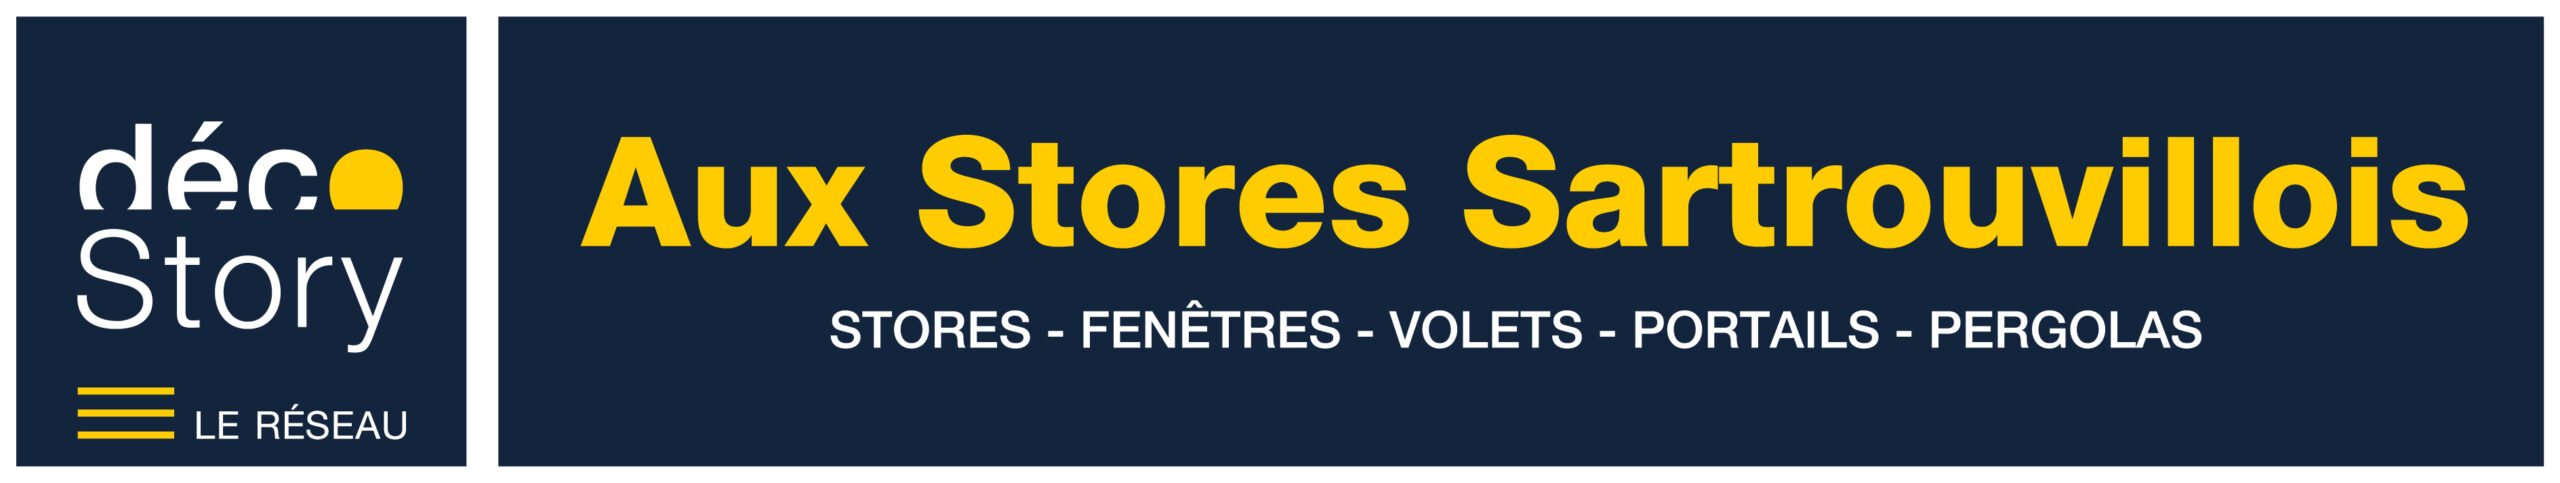 Logo Aux Stores Sartrouvillois